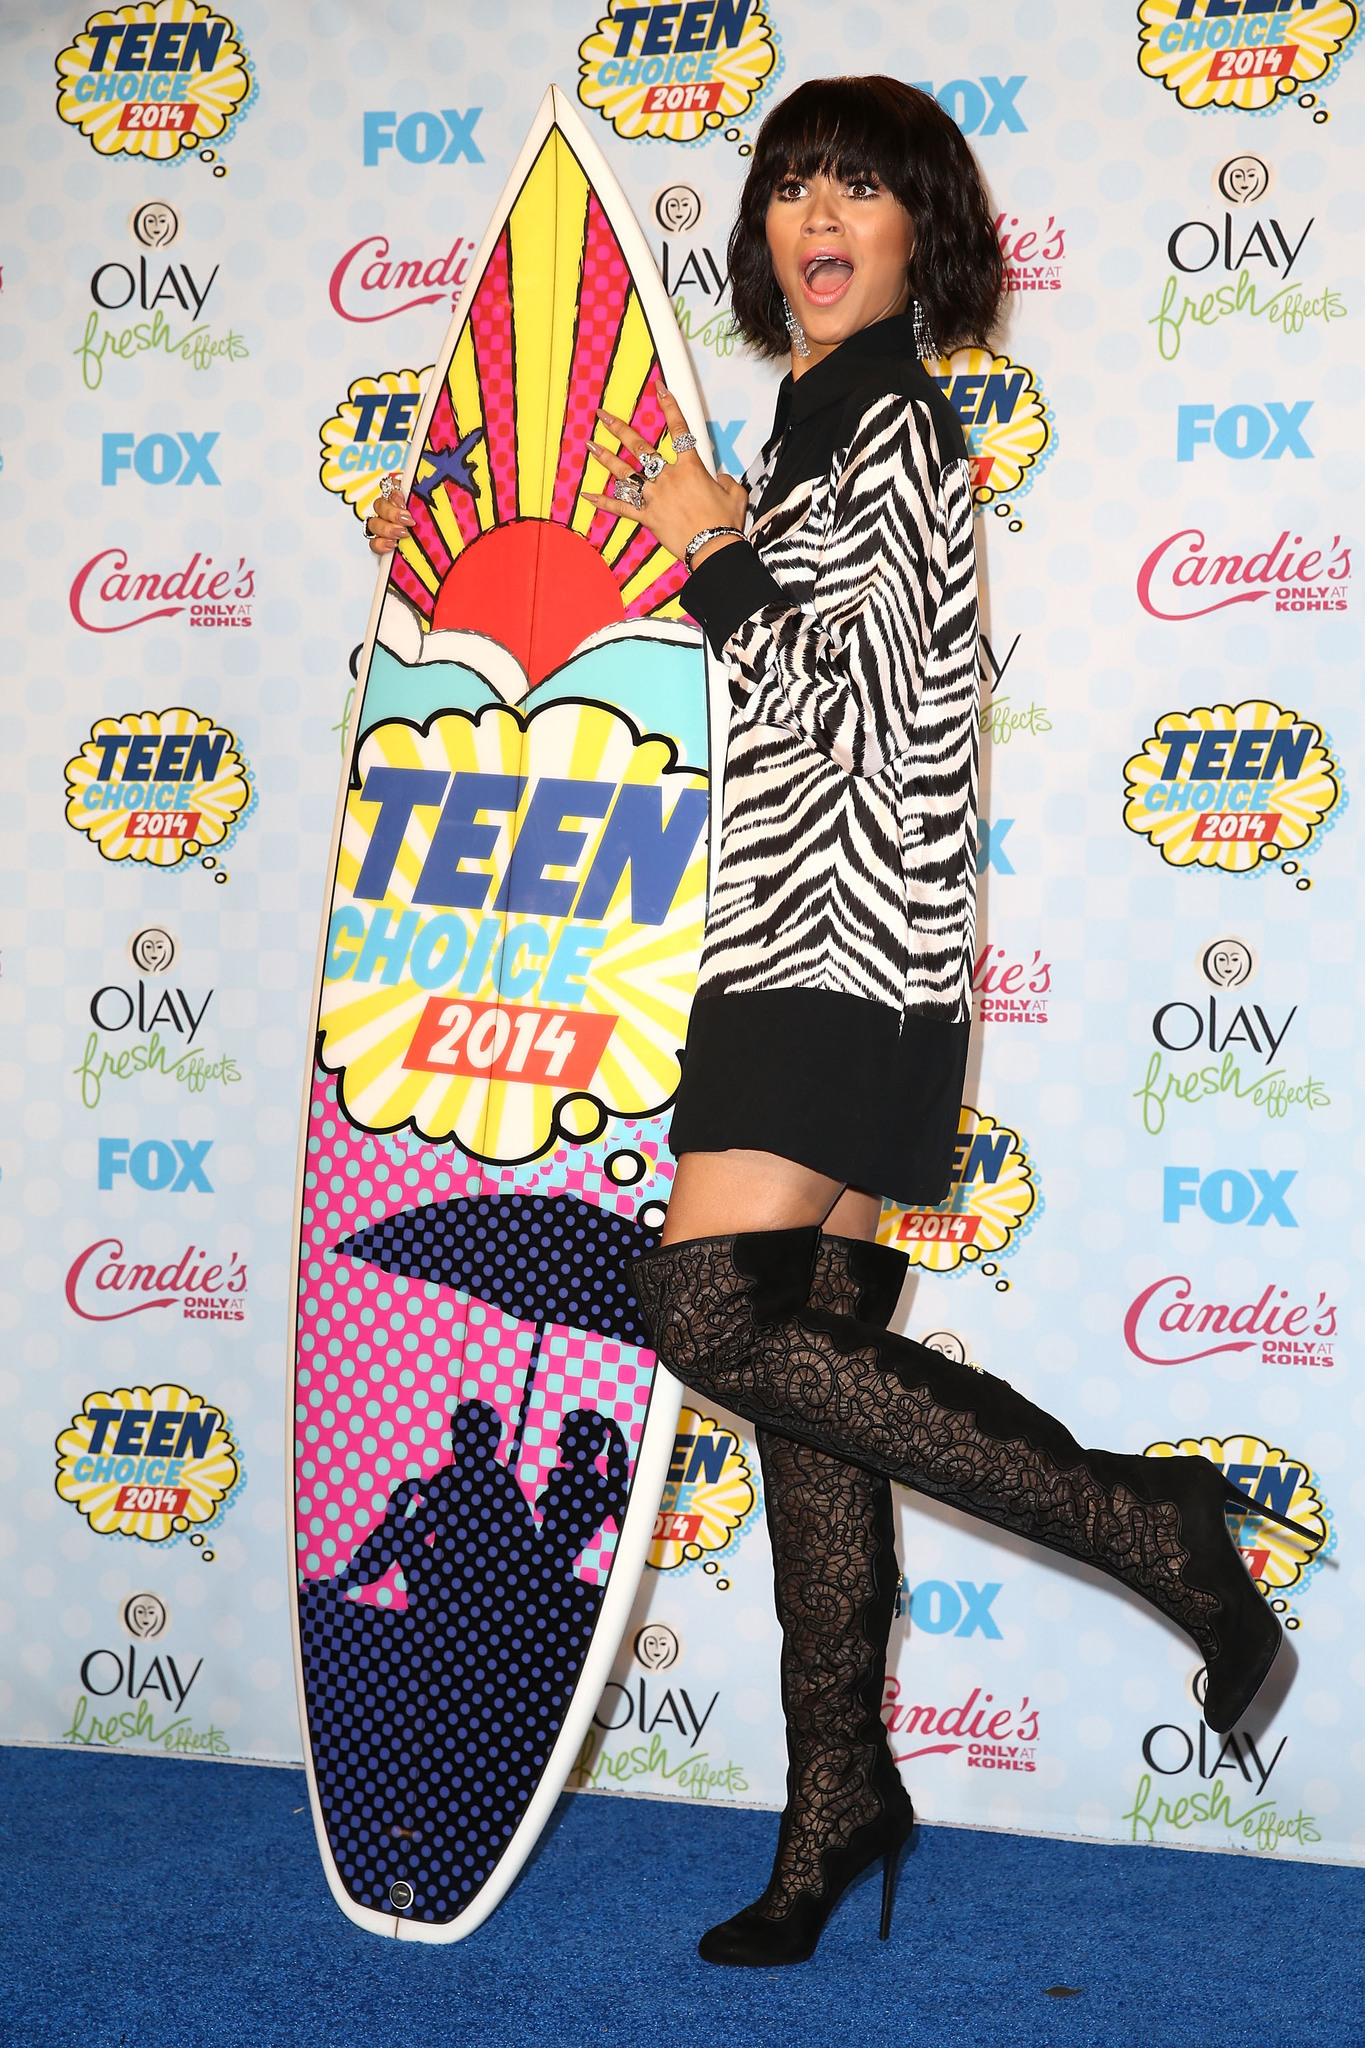 Zendaya at event of Teen Choice Awards 2014 (2014)